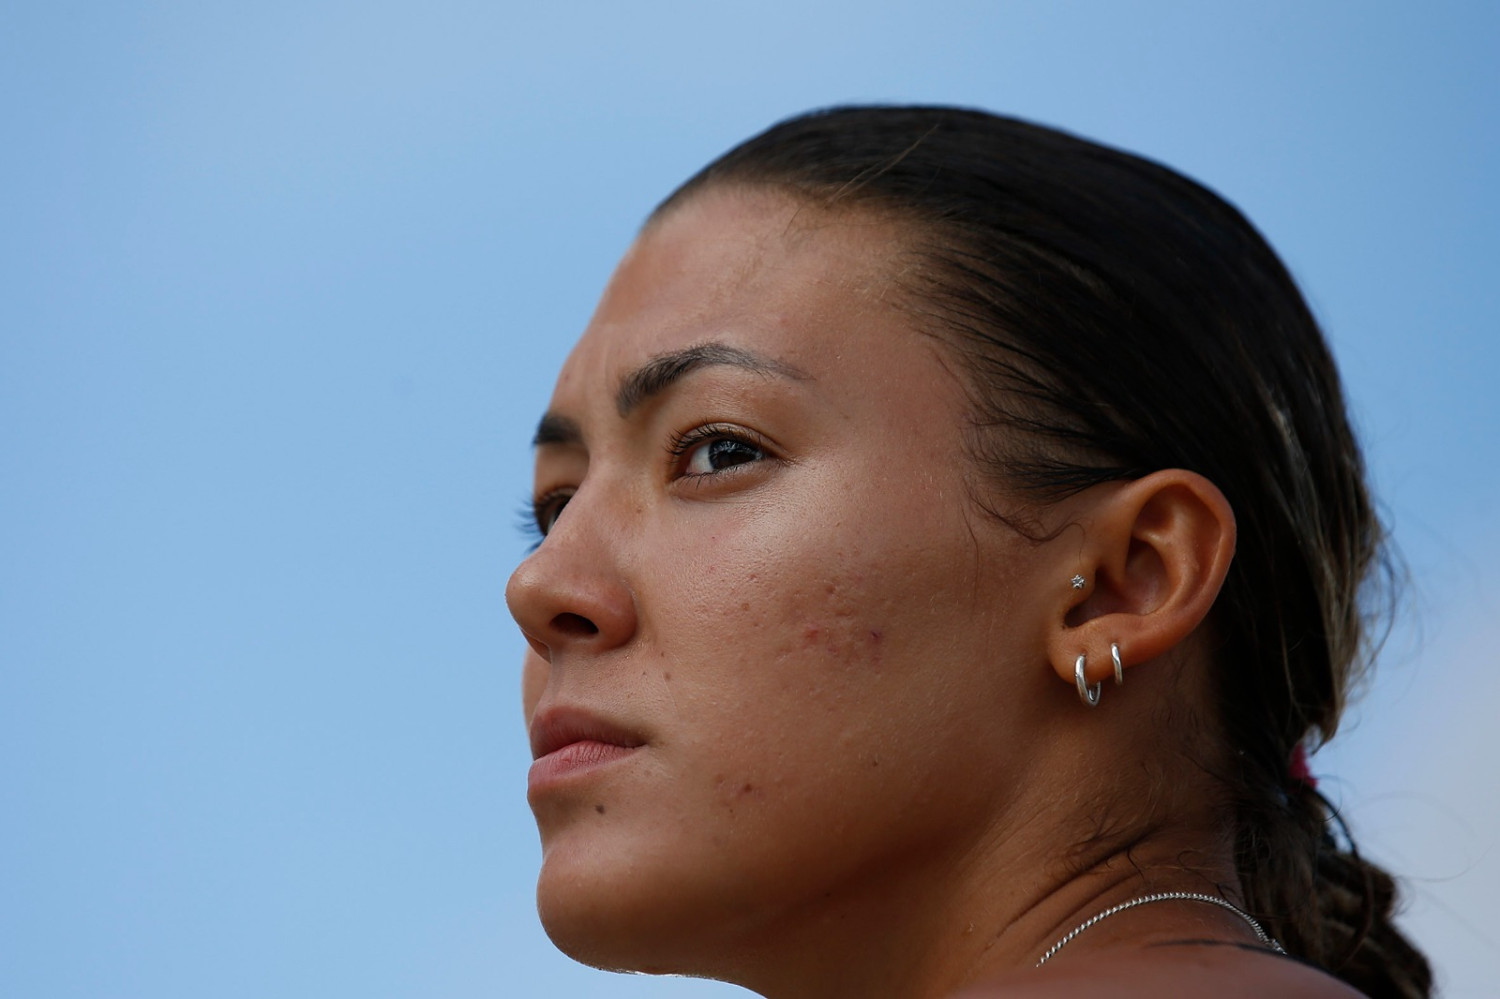 Anna Lúcia dos Santos estreia bem no Campeonato Brasileiro de Saltos Ornamentais, em Fortaleza, e garante vaga no Mundial de Doha